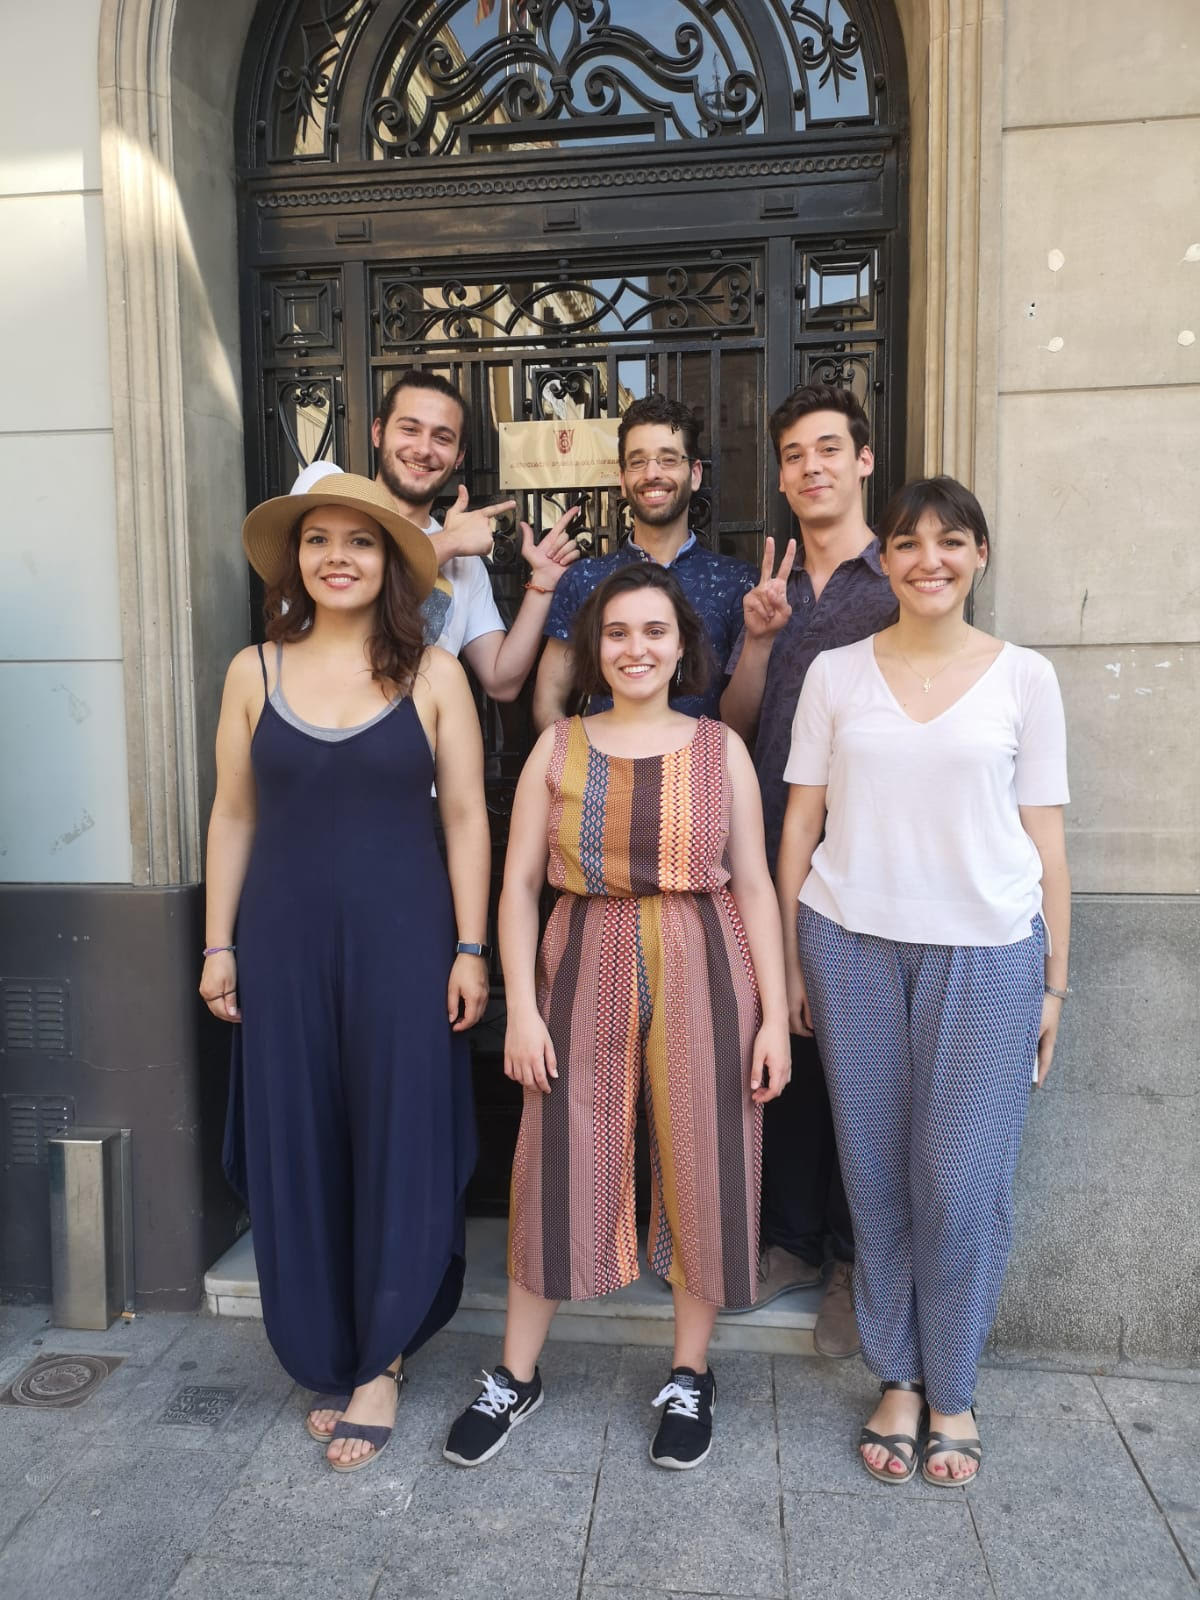 Ja tenim els guanyadors del Concurs Mirna Lacambra per accedir al XXII Curs de Professionalització de l'Escola d'Òpera de Sabadell, dedicat el 2018 a l'òpera Falstaff de Verdi